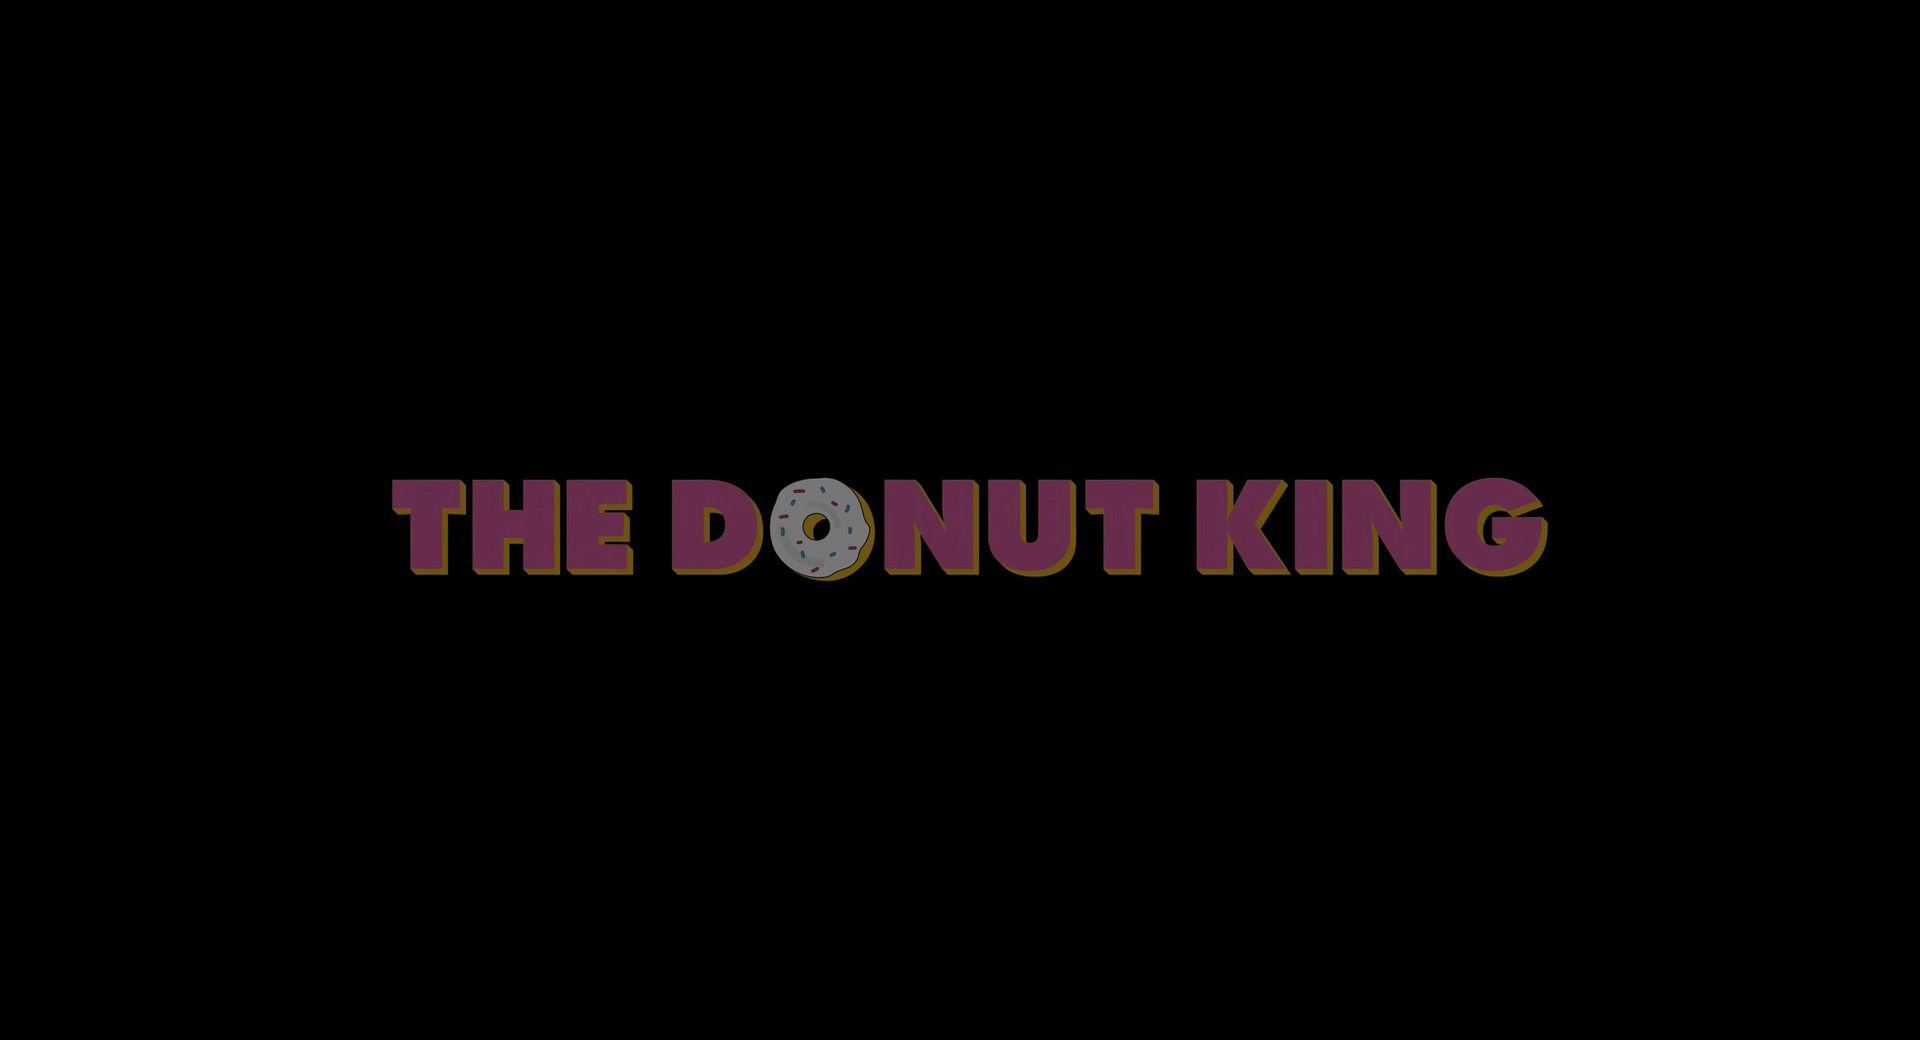 დონატების მეფე / The Donut King